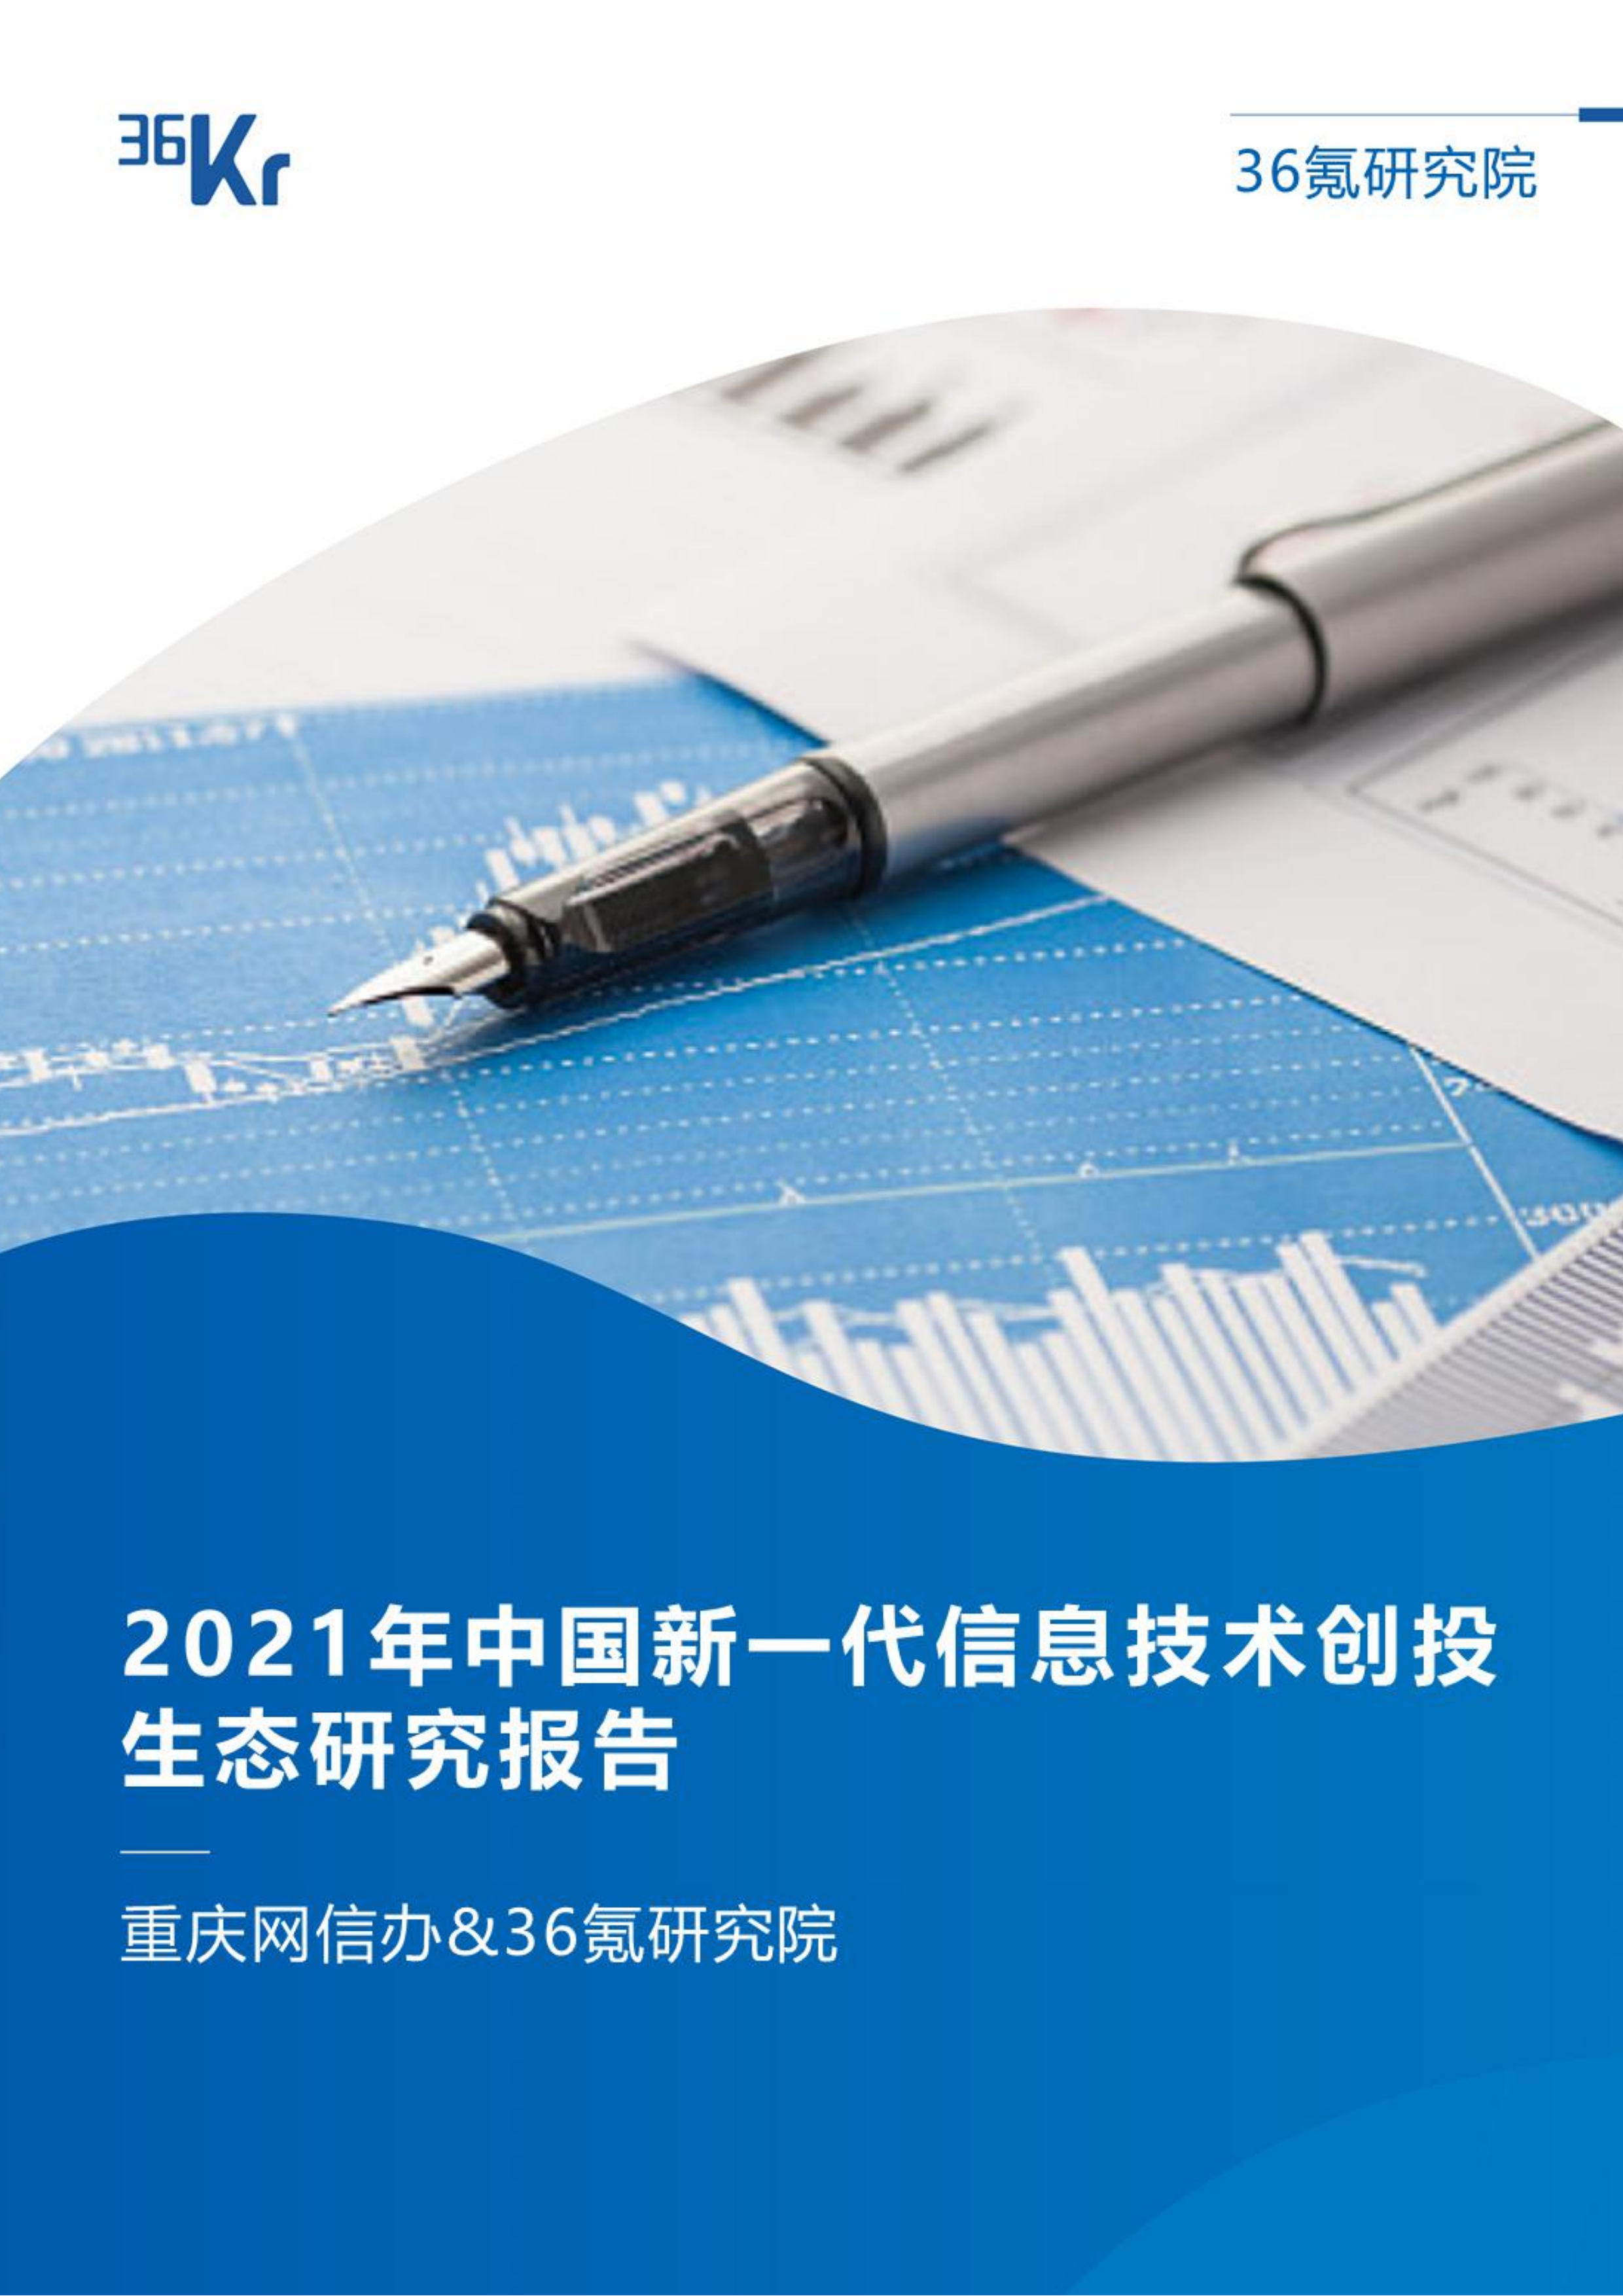 36氪研究院 | 2021年中国新一代信息技术创投生态研究报告